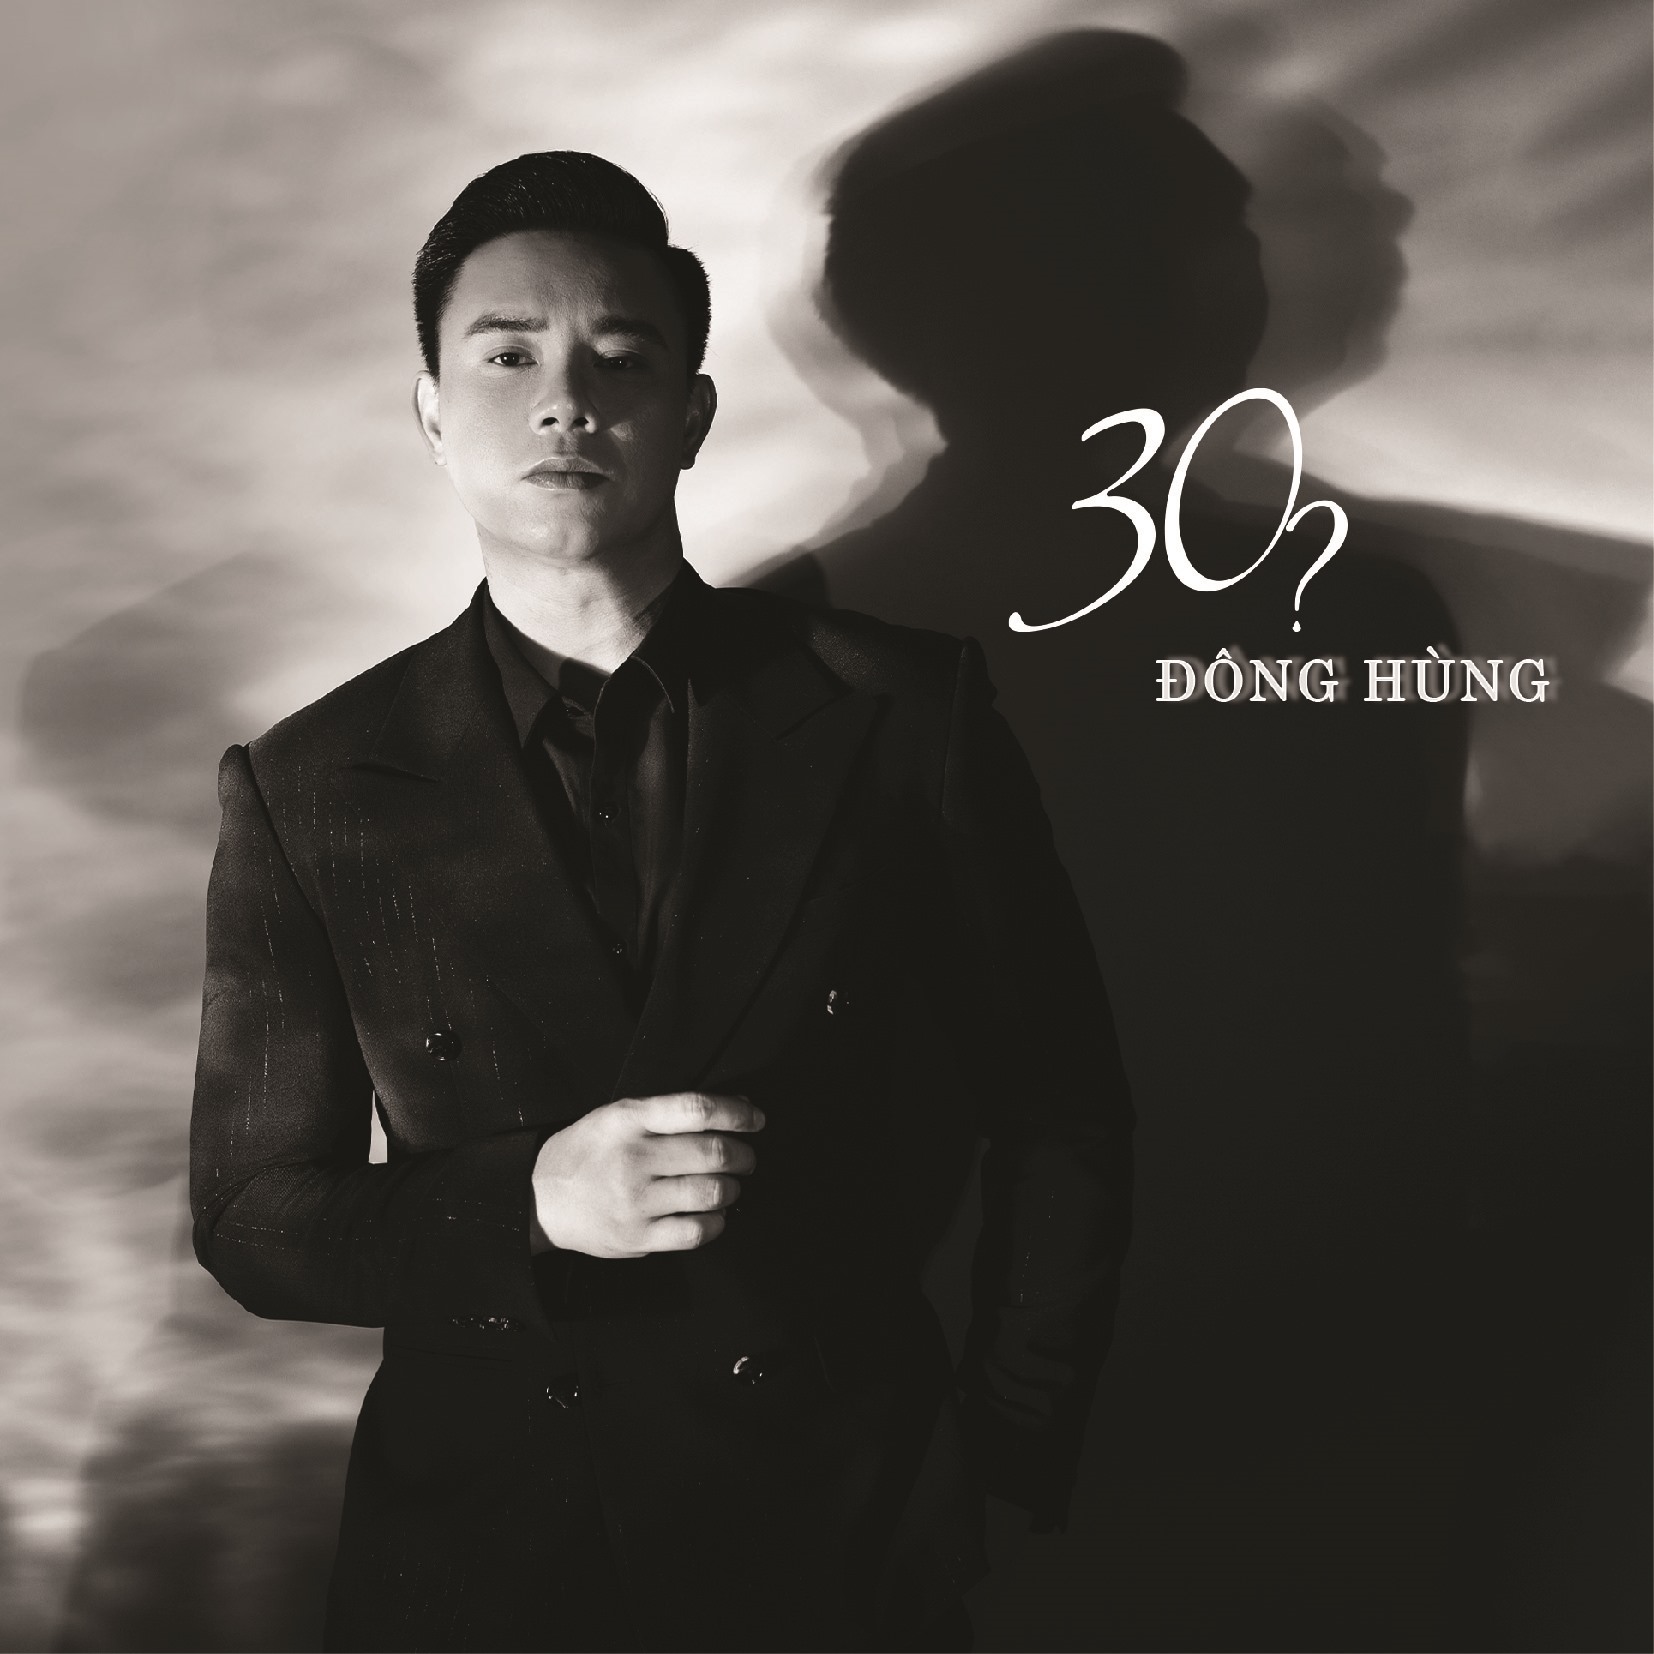 Đông Hùng dành nhiều tâm huyết cho dự án âm nhạc “The 30? Project“. Ảnh: Nhân vật cung cấp